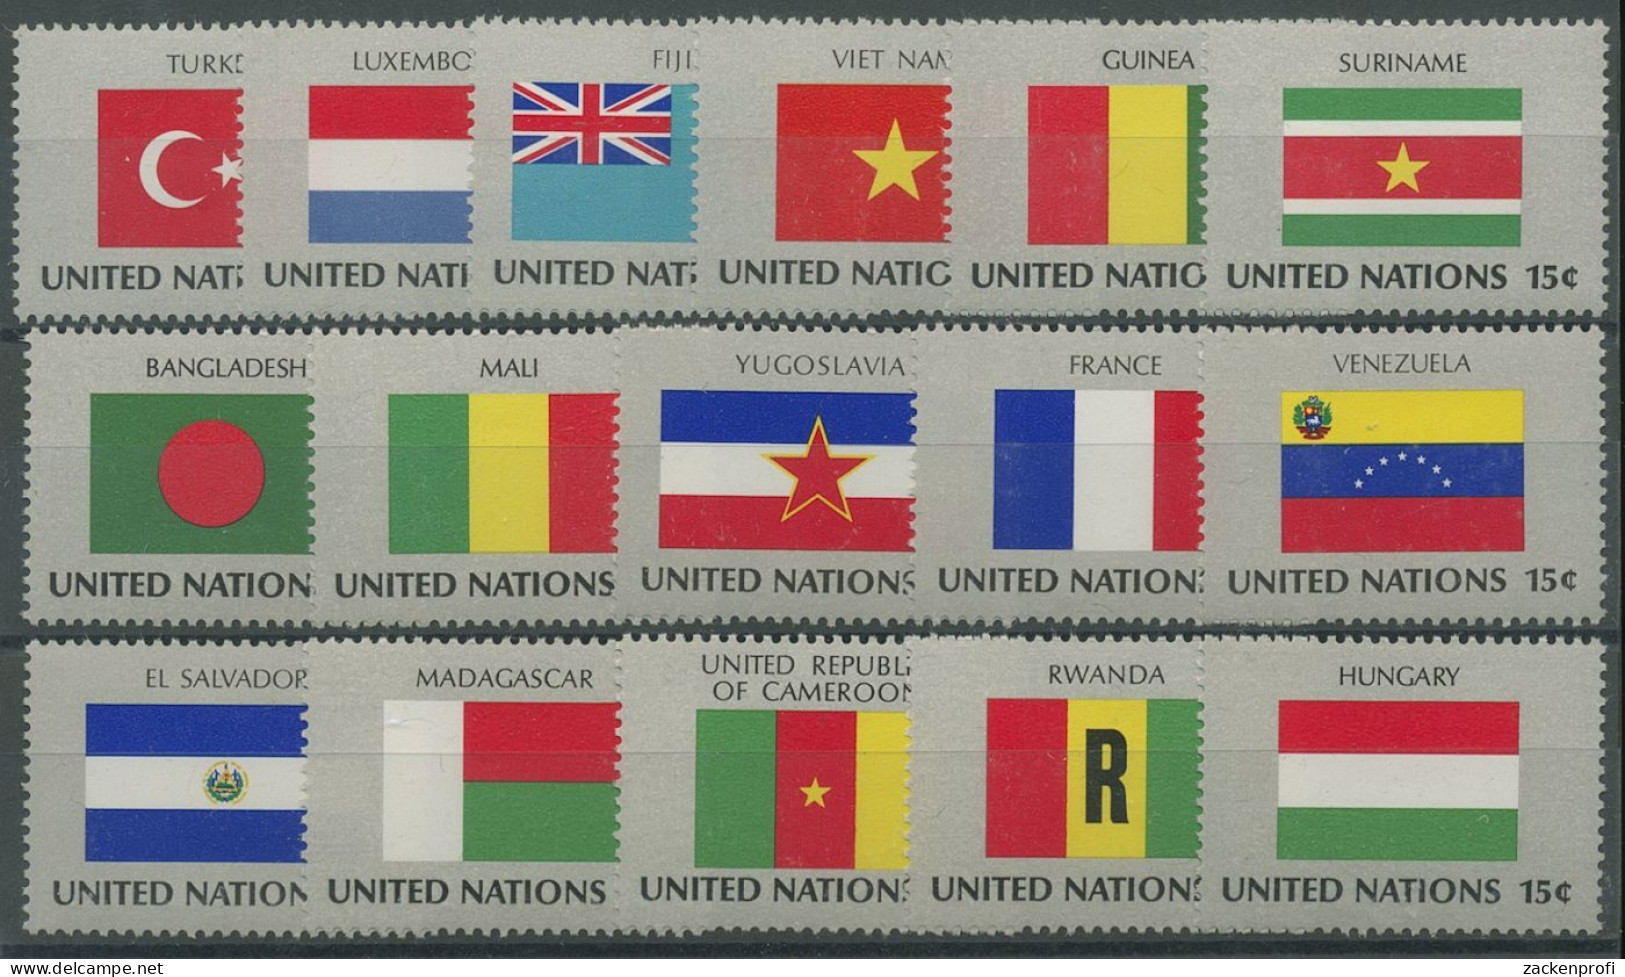 UNO New York 1980 Flaggenserie Komplett 348/63 Postfrisch (G14403) - Unused Stamps